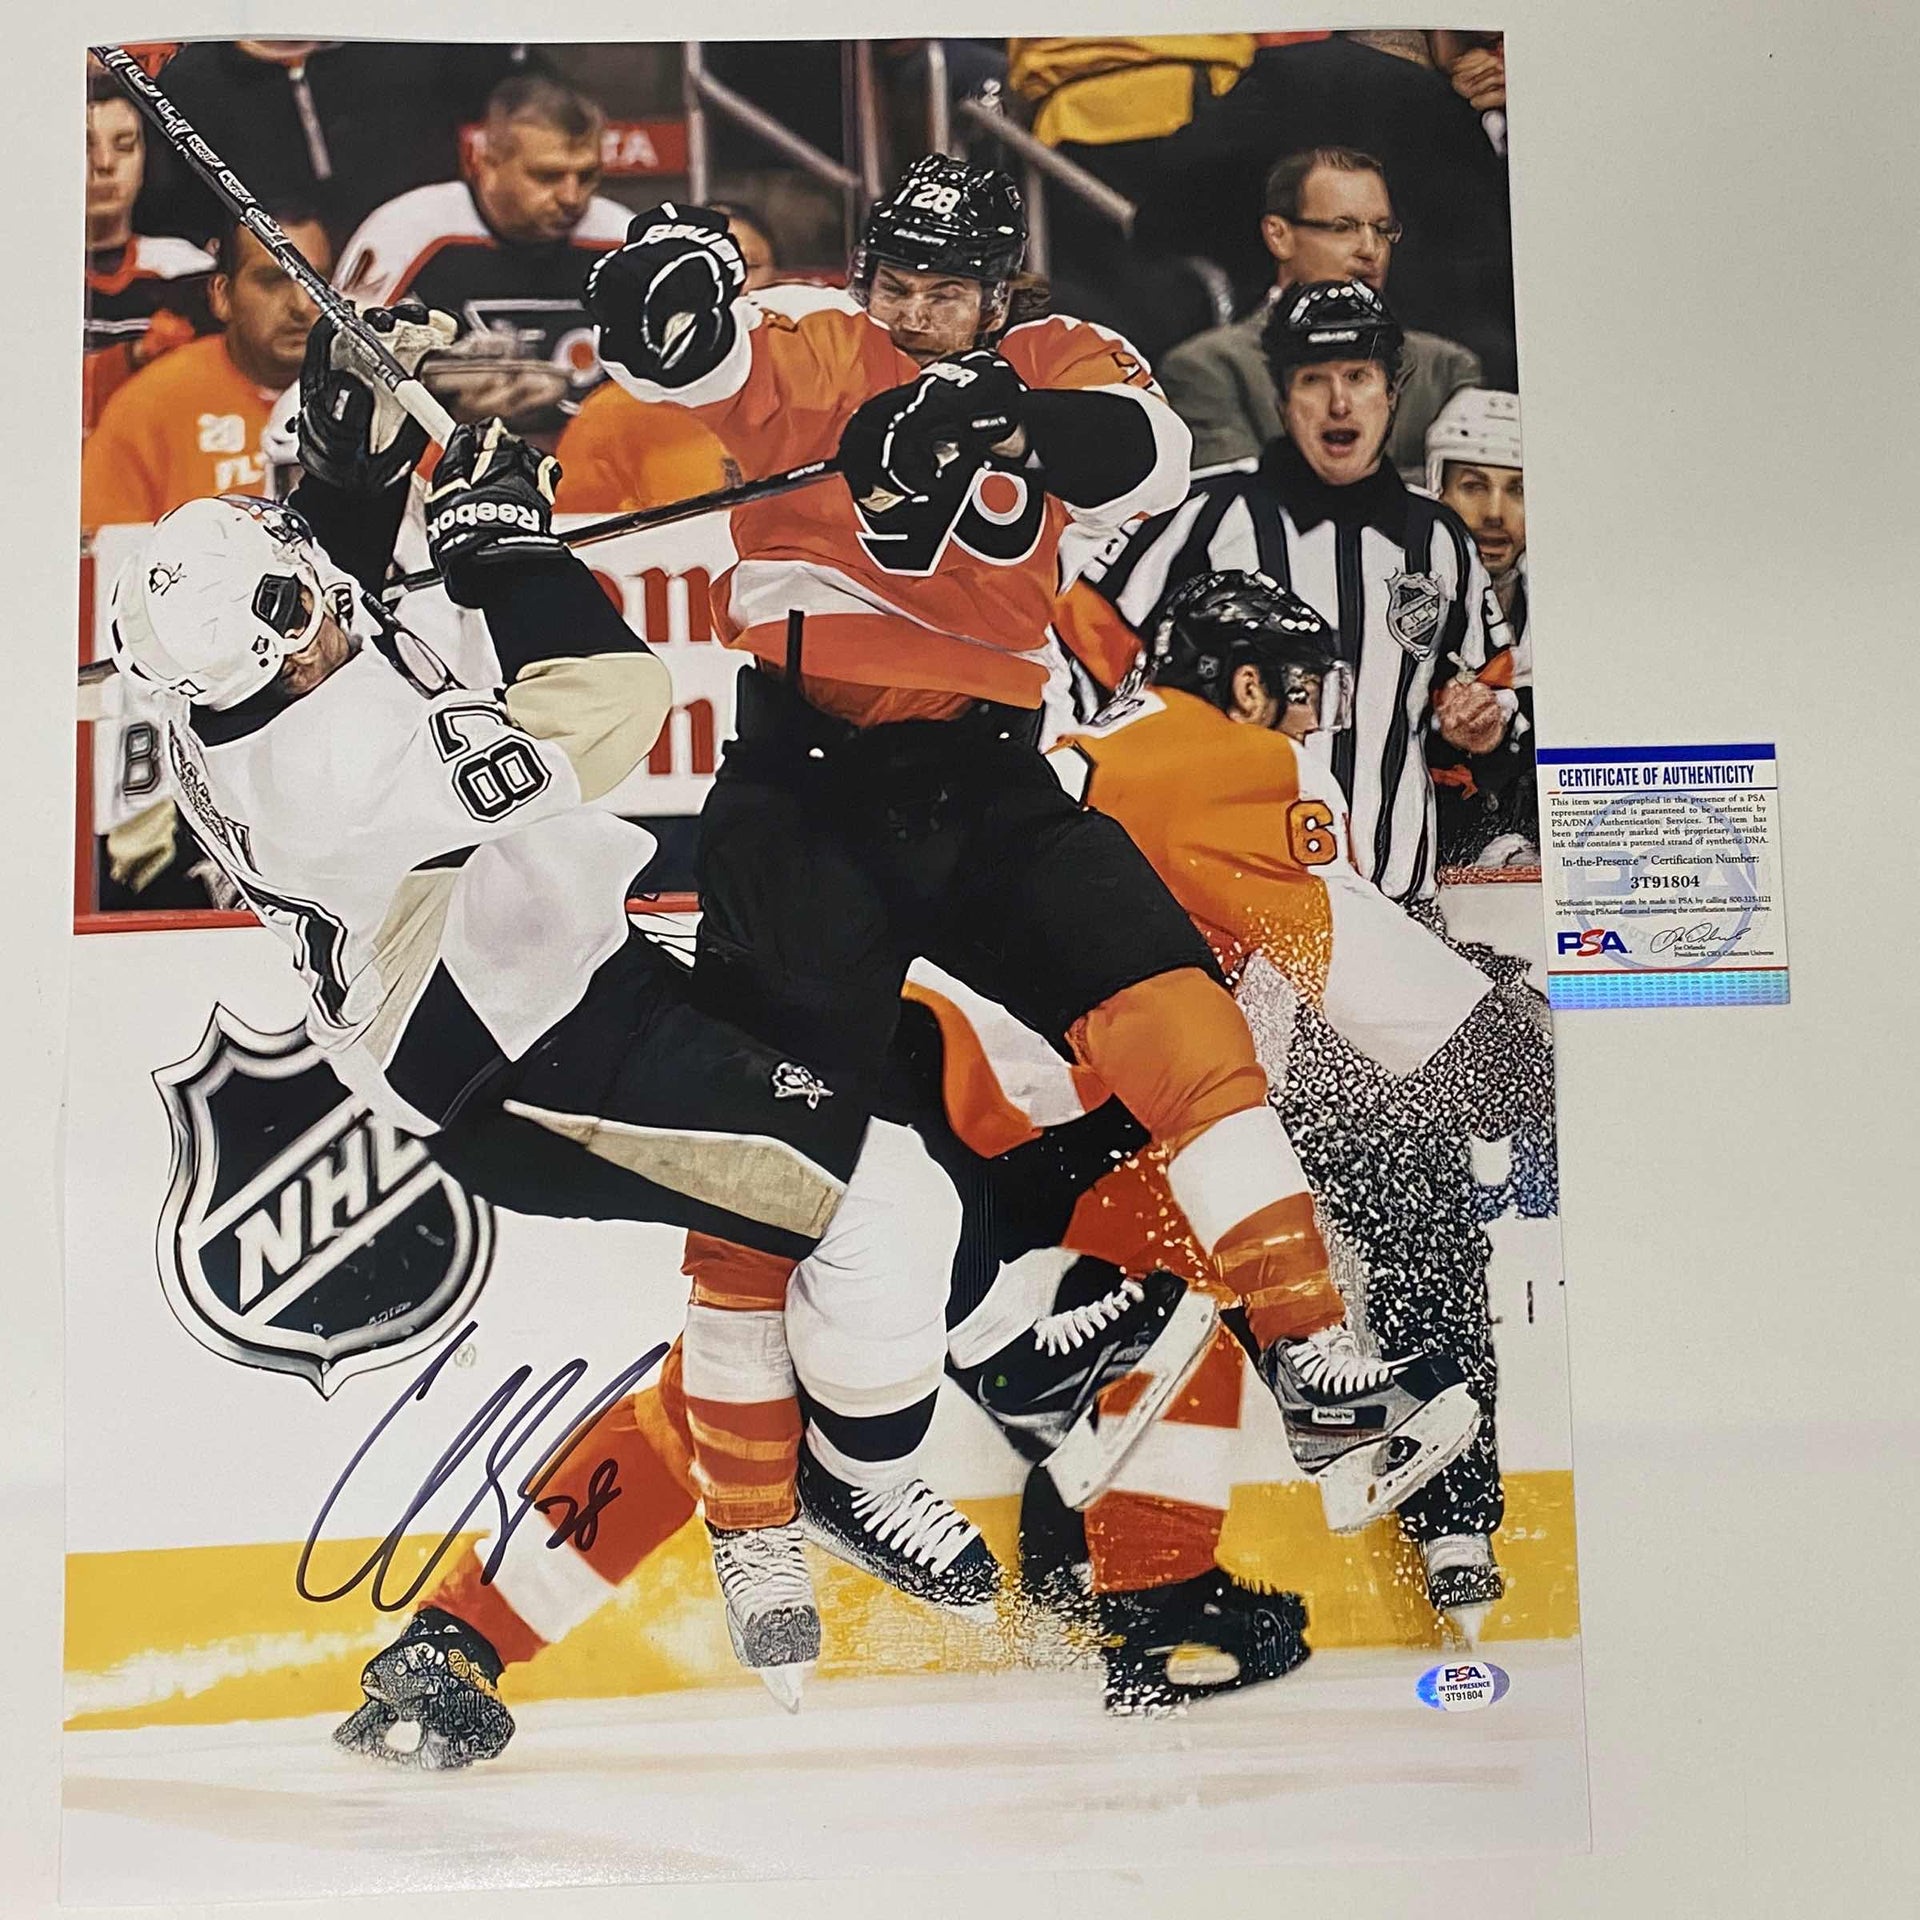 Sidney Crosby - NHL Memorabilia